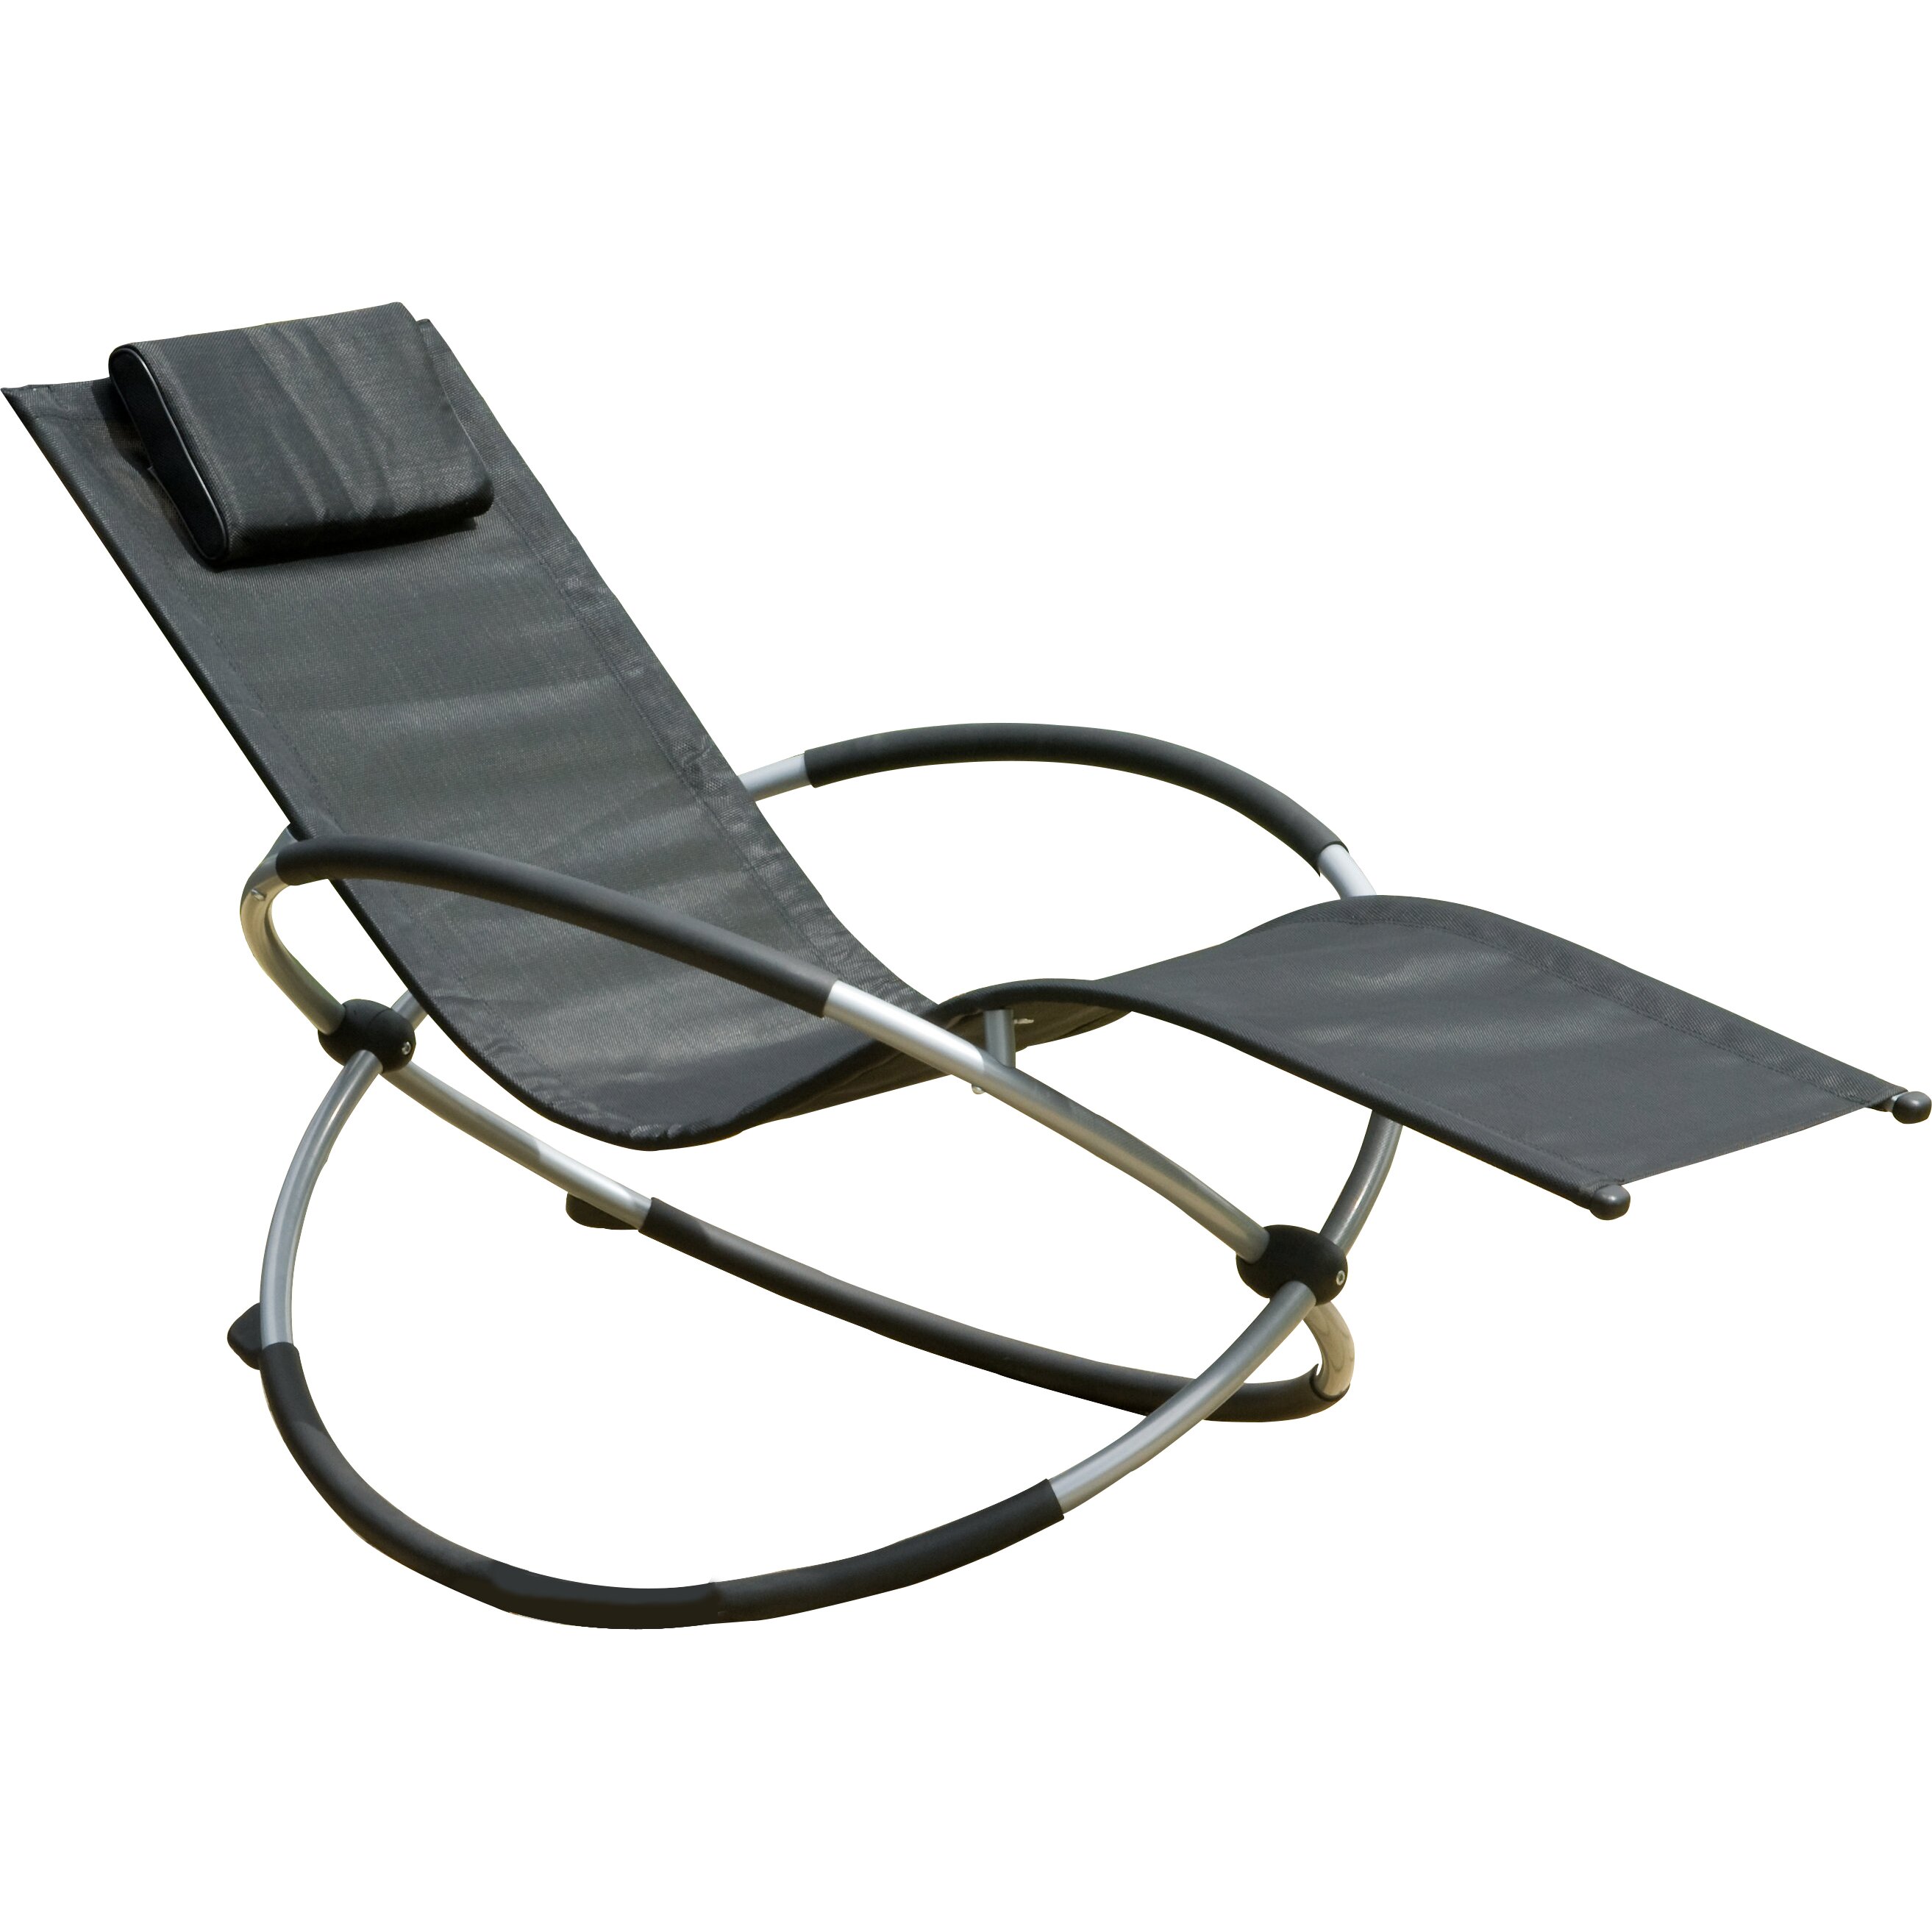 Suntime Orbit Relaxer Folding Rocking Chair Sun Lounger & Reviews